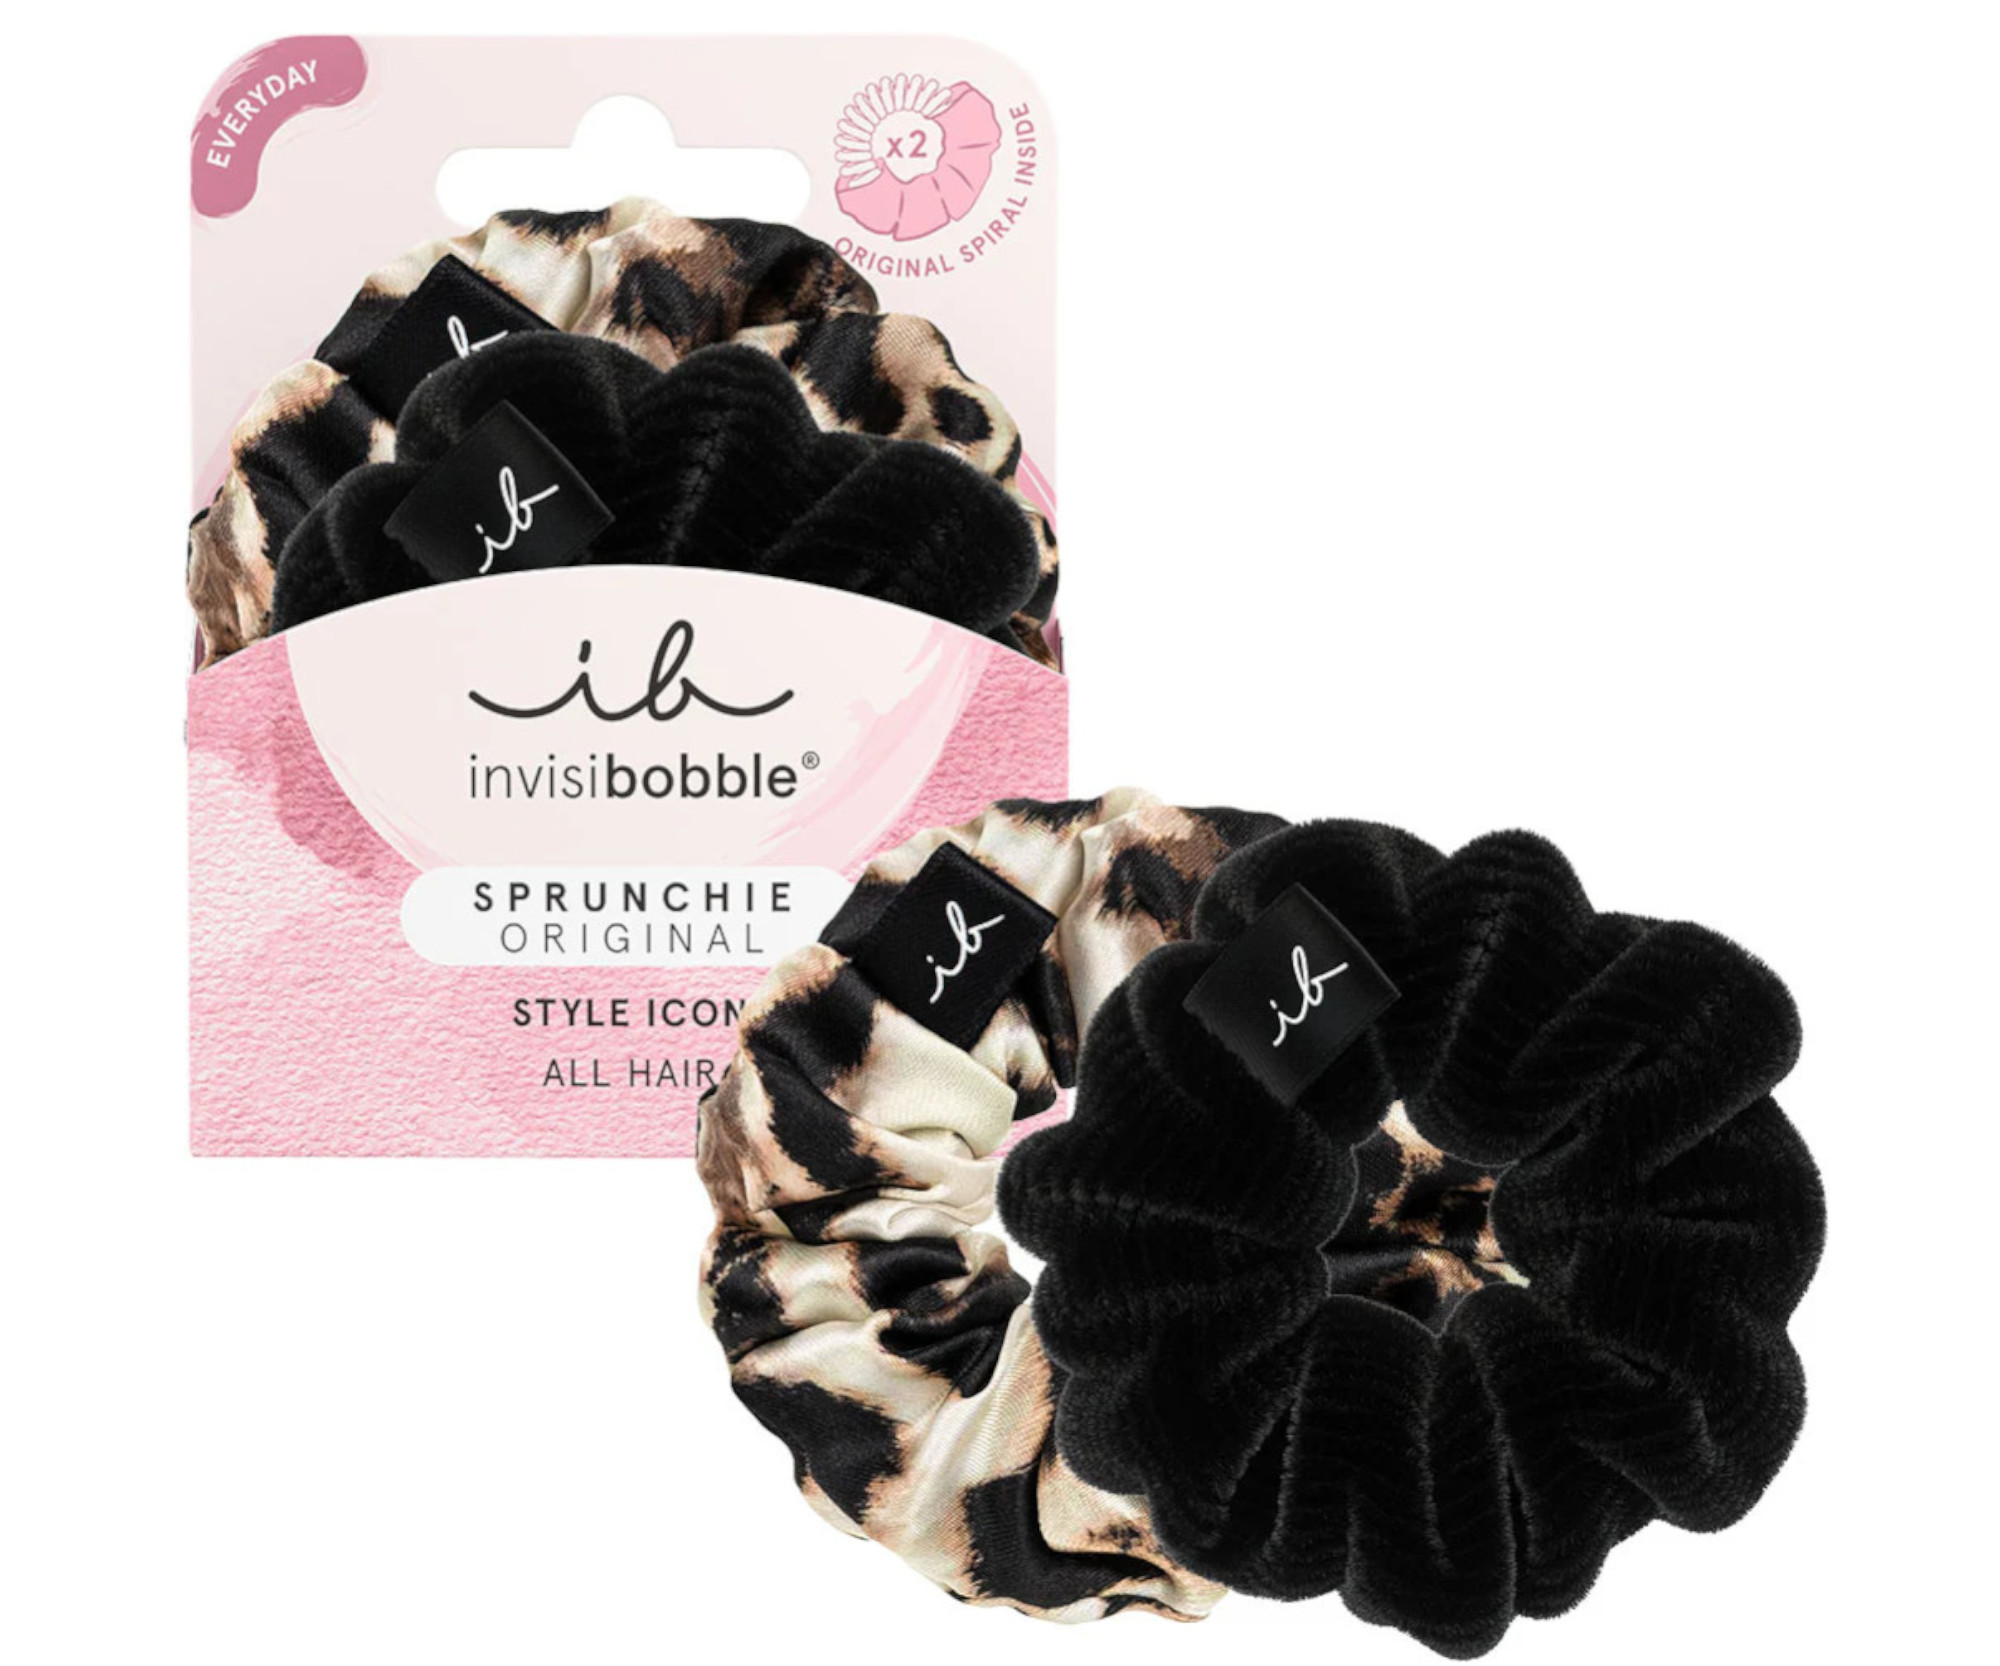 Ozdobné spirálové gumičky Invisibobble Sprunchie Original Style Icon - 2 ks + dárek zdarma